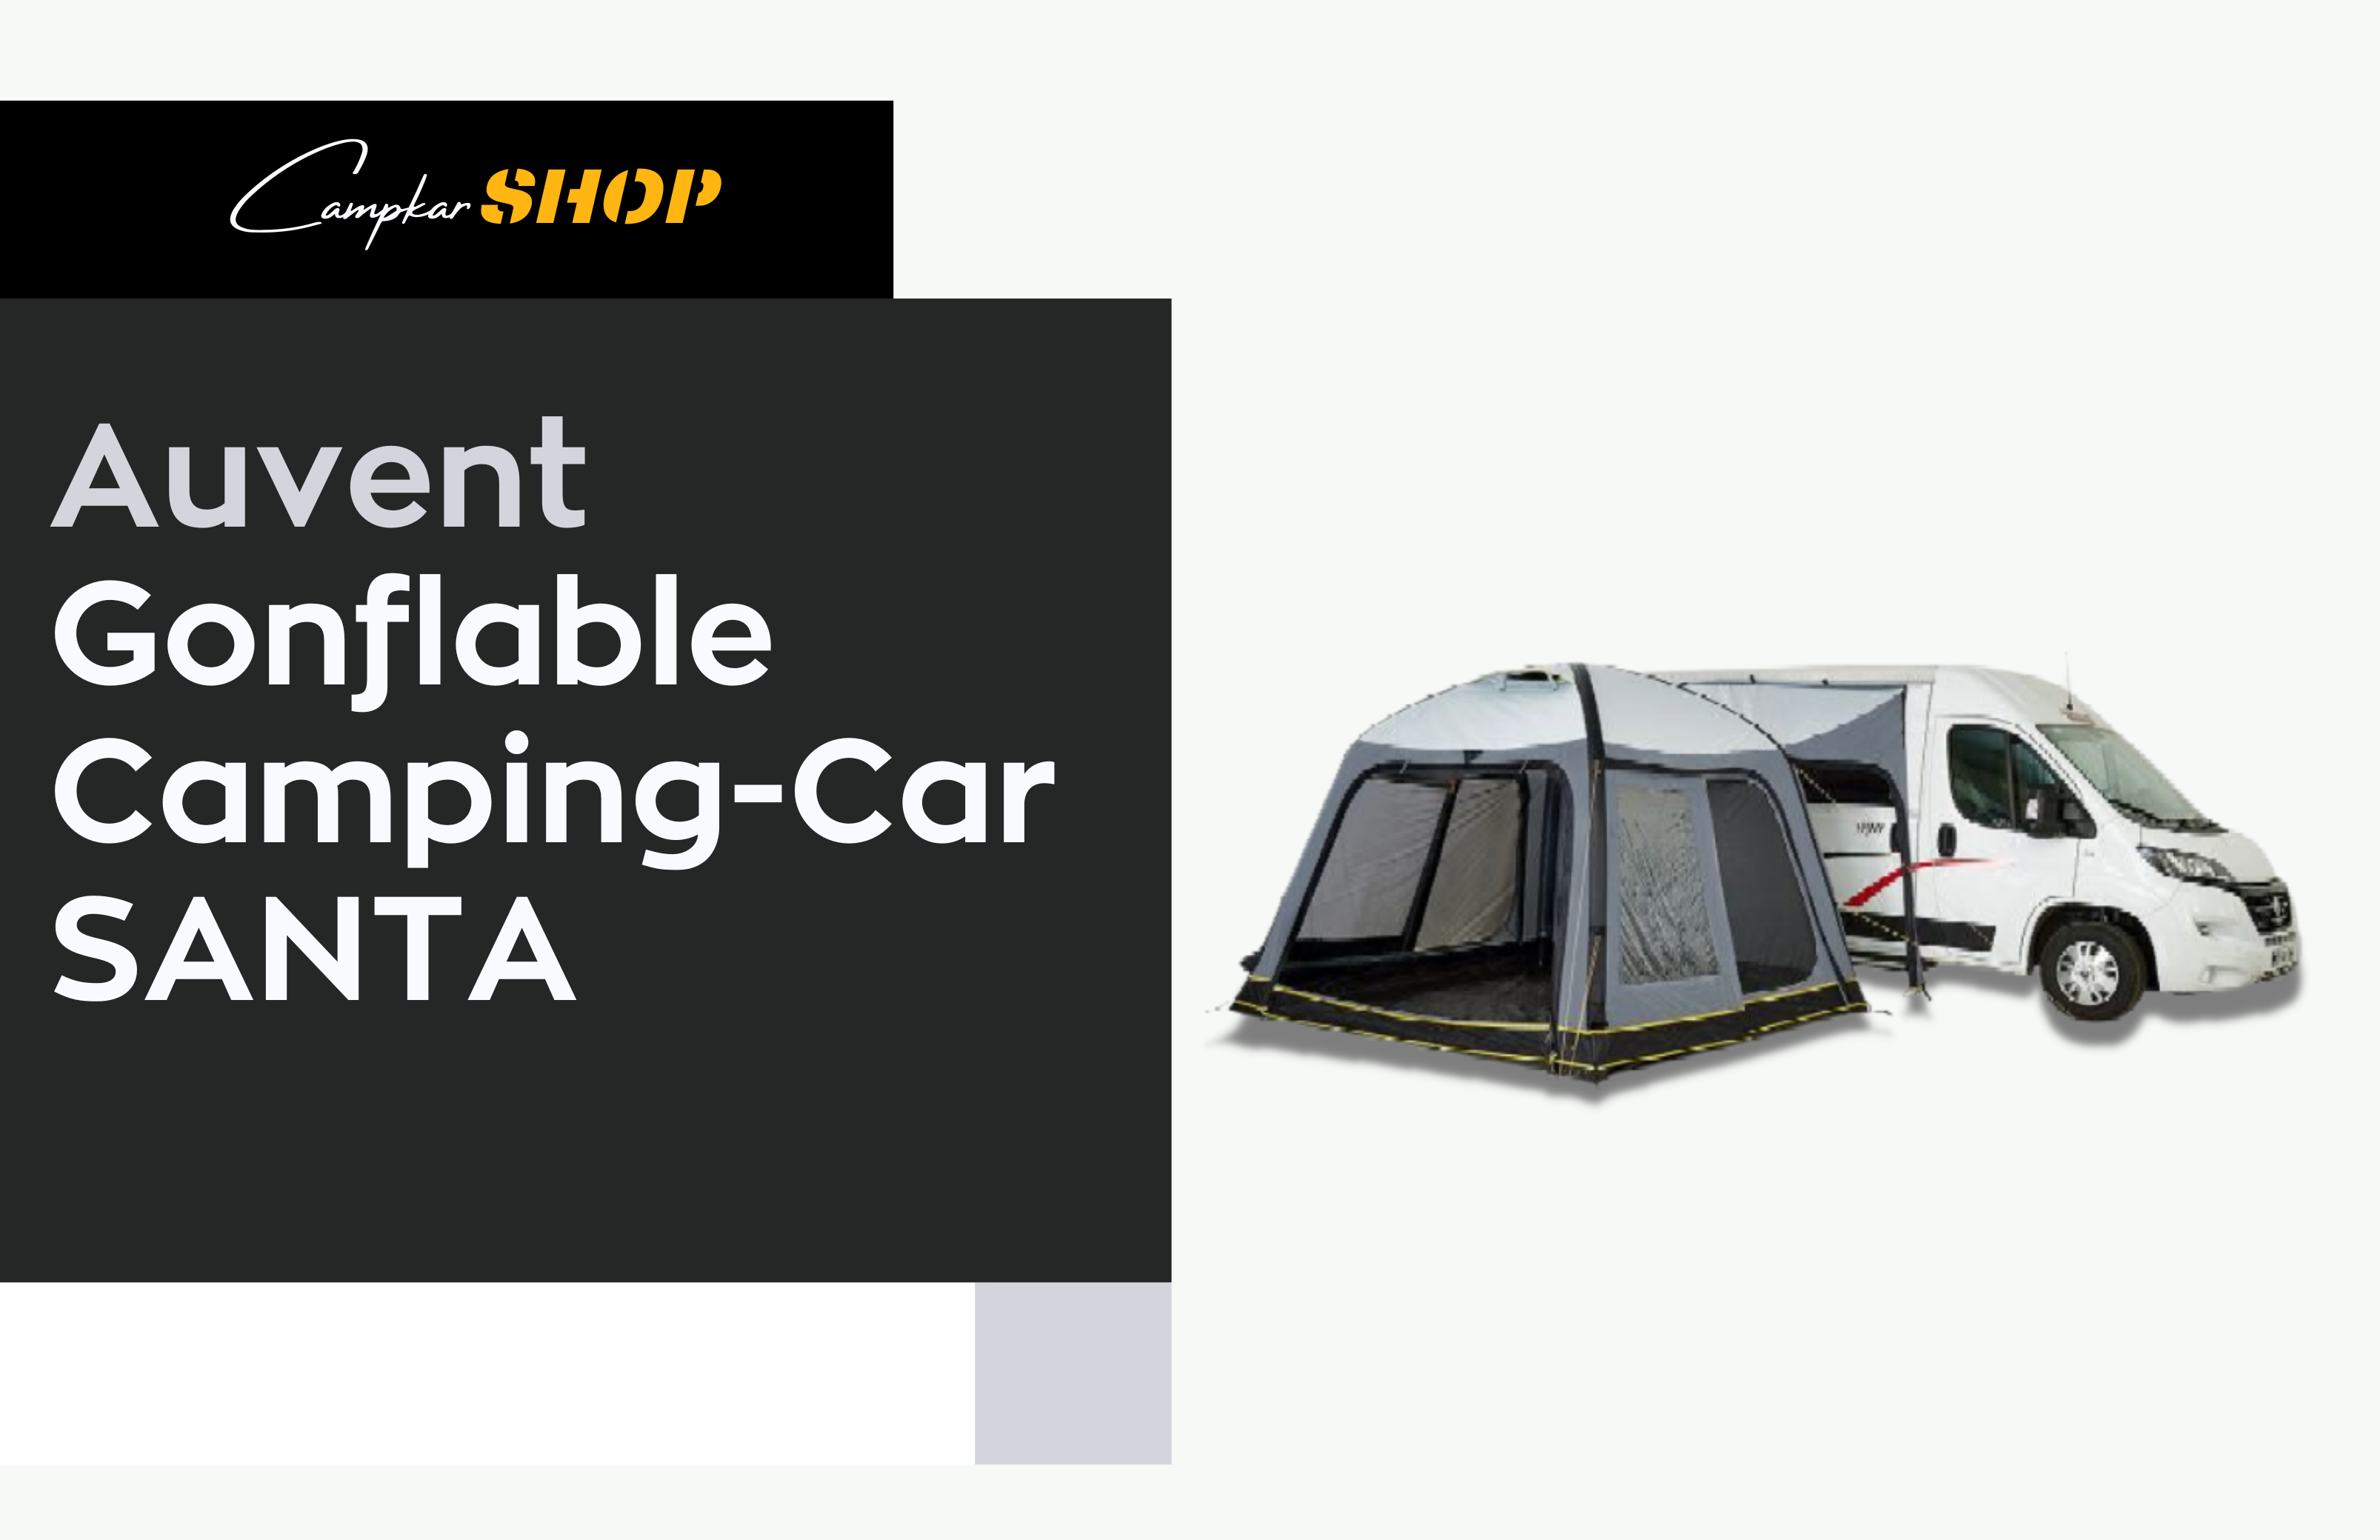 Auvent Gonflable Pour Camping-Car Santa 3.5m - Campkar.Shop